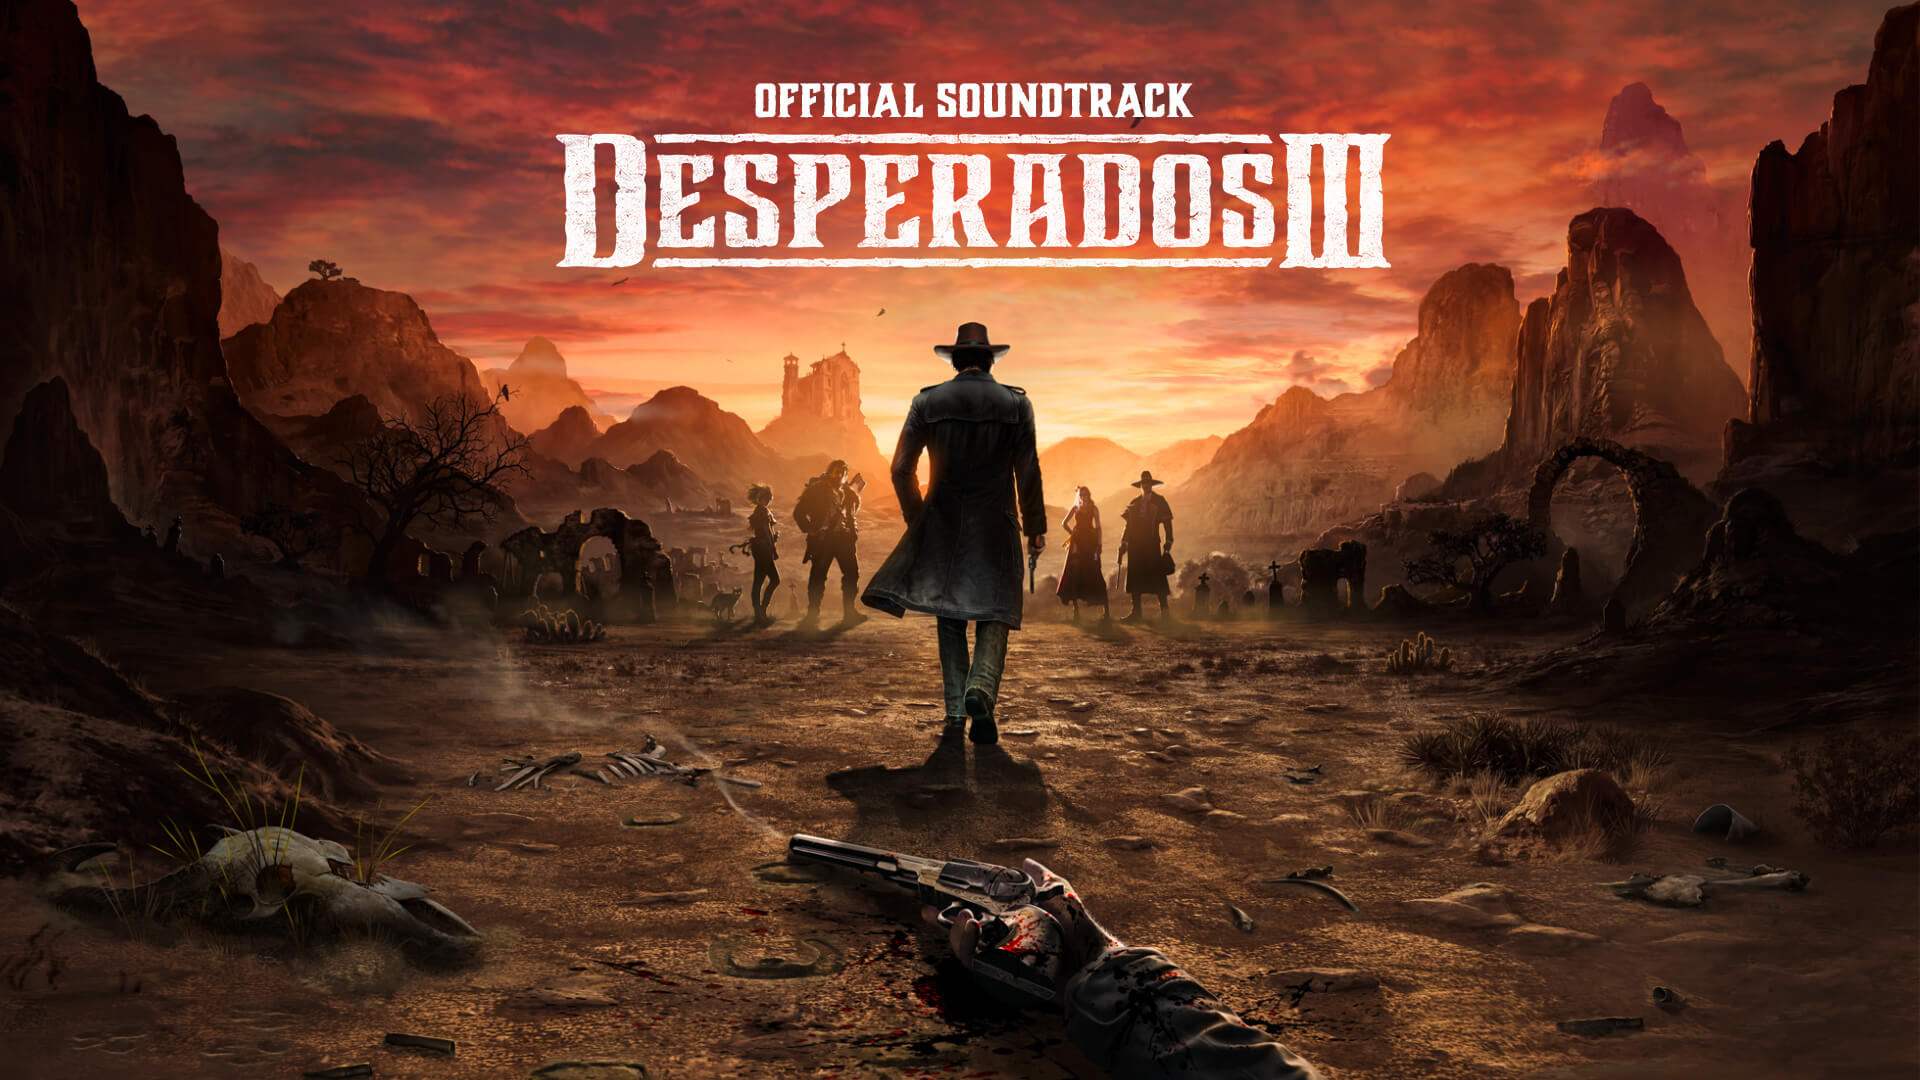 Desperados III - Soundtrack DLC Steam CD Key, 4.51 usd